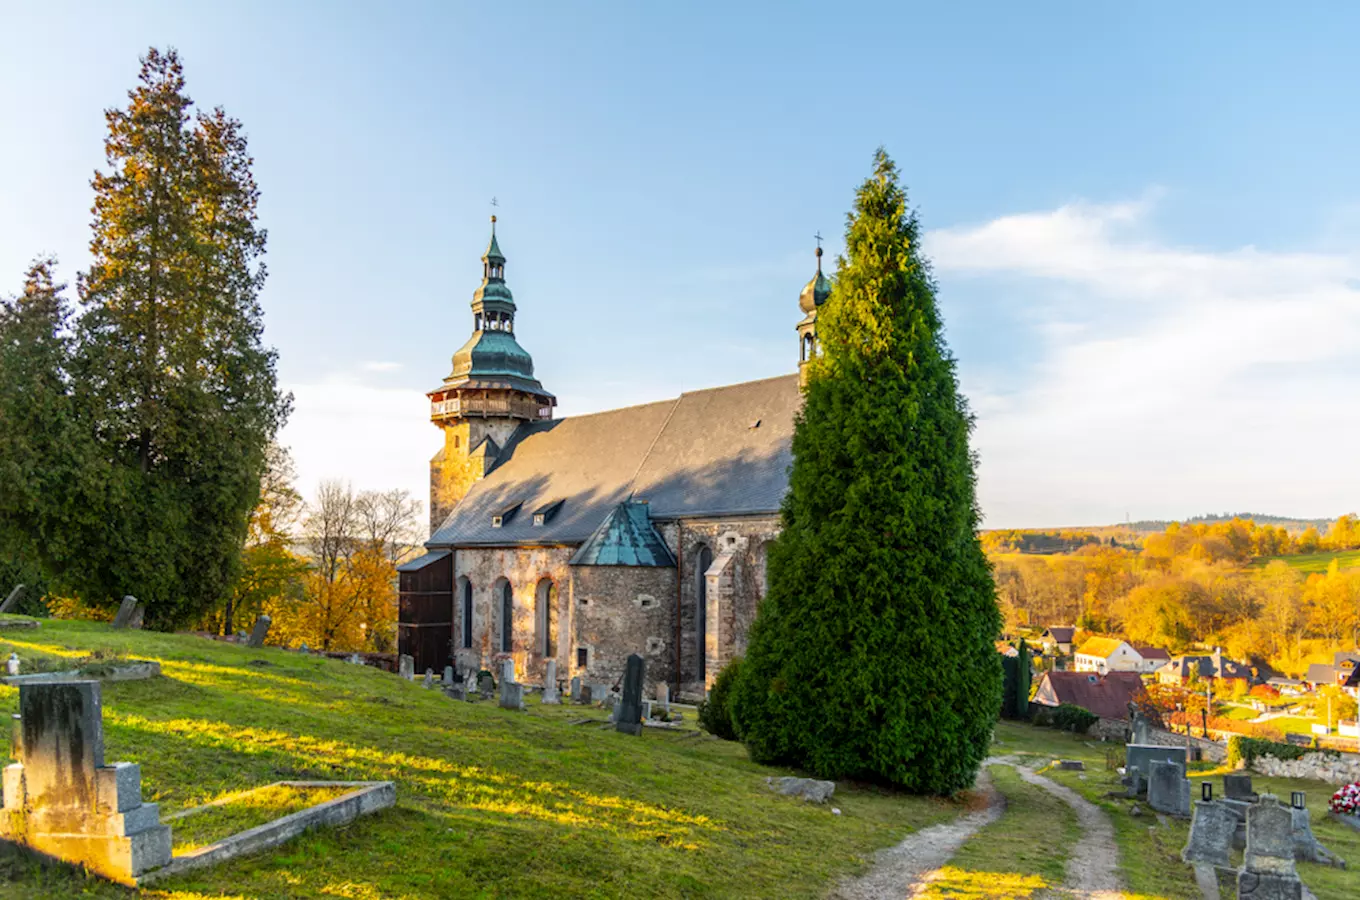 Pevnostní kostel sv. Jiří v Horním Slavkově